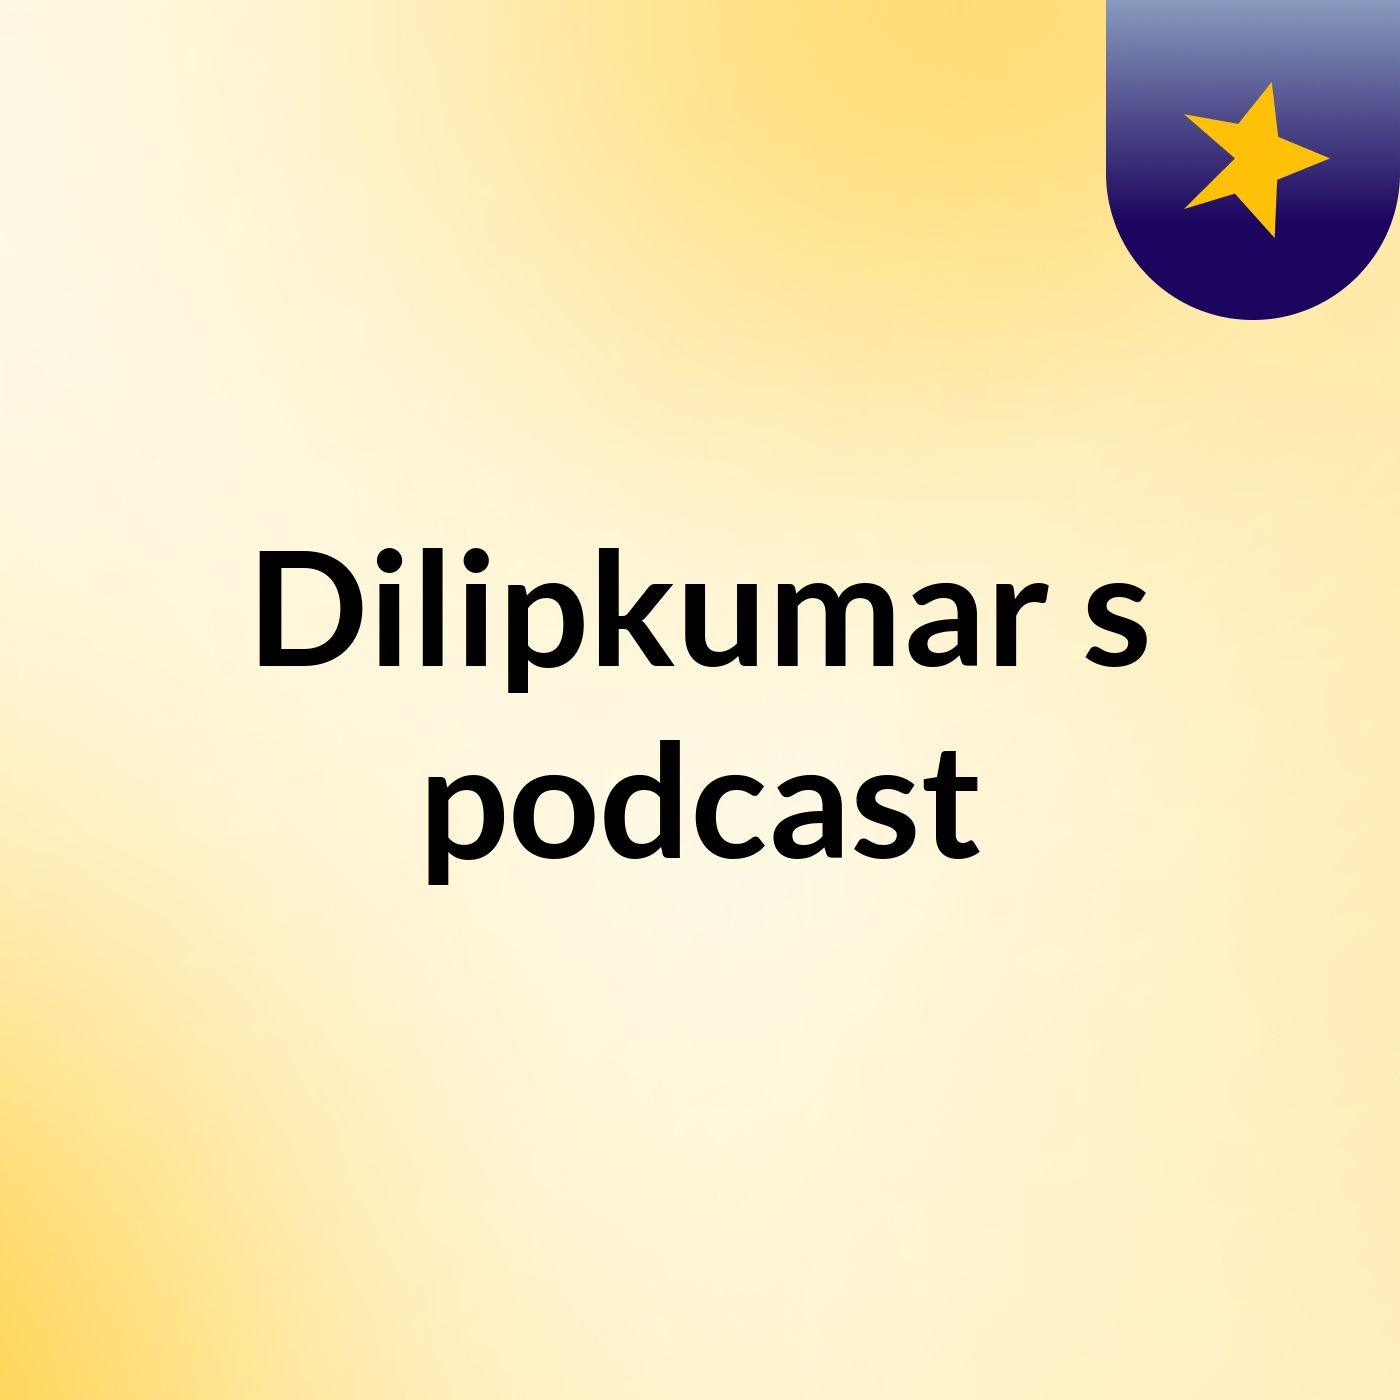 Episode 2 - Dilipkumar's podcast